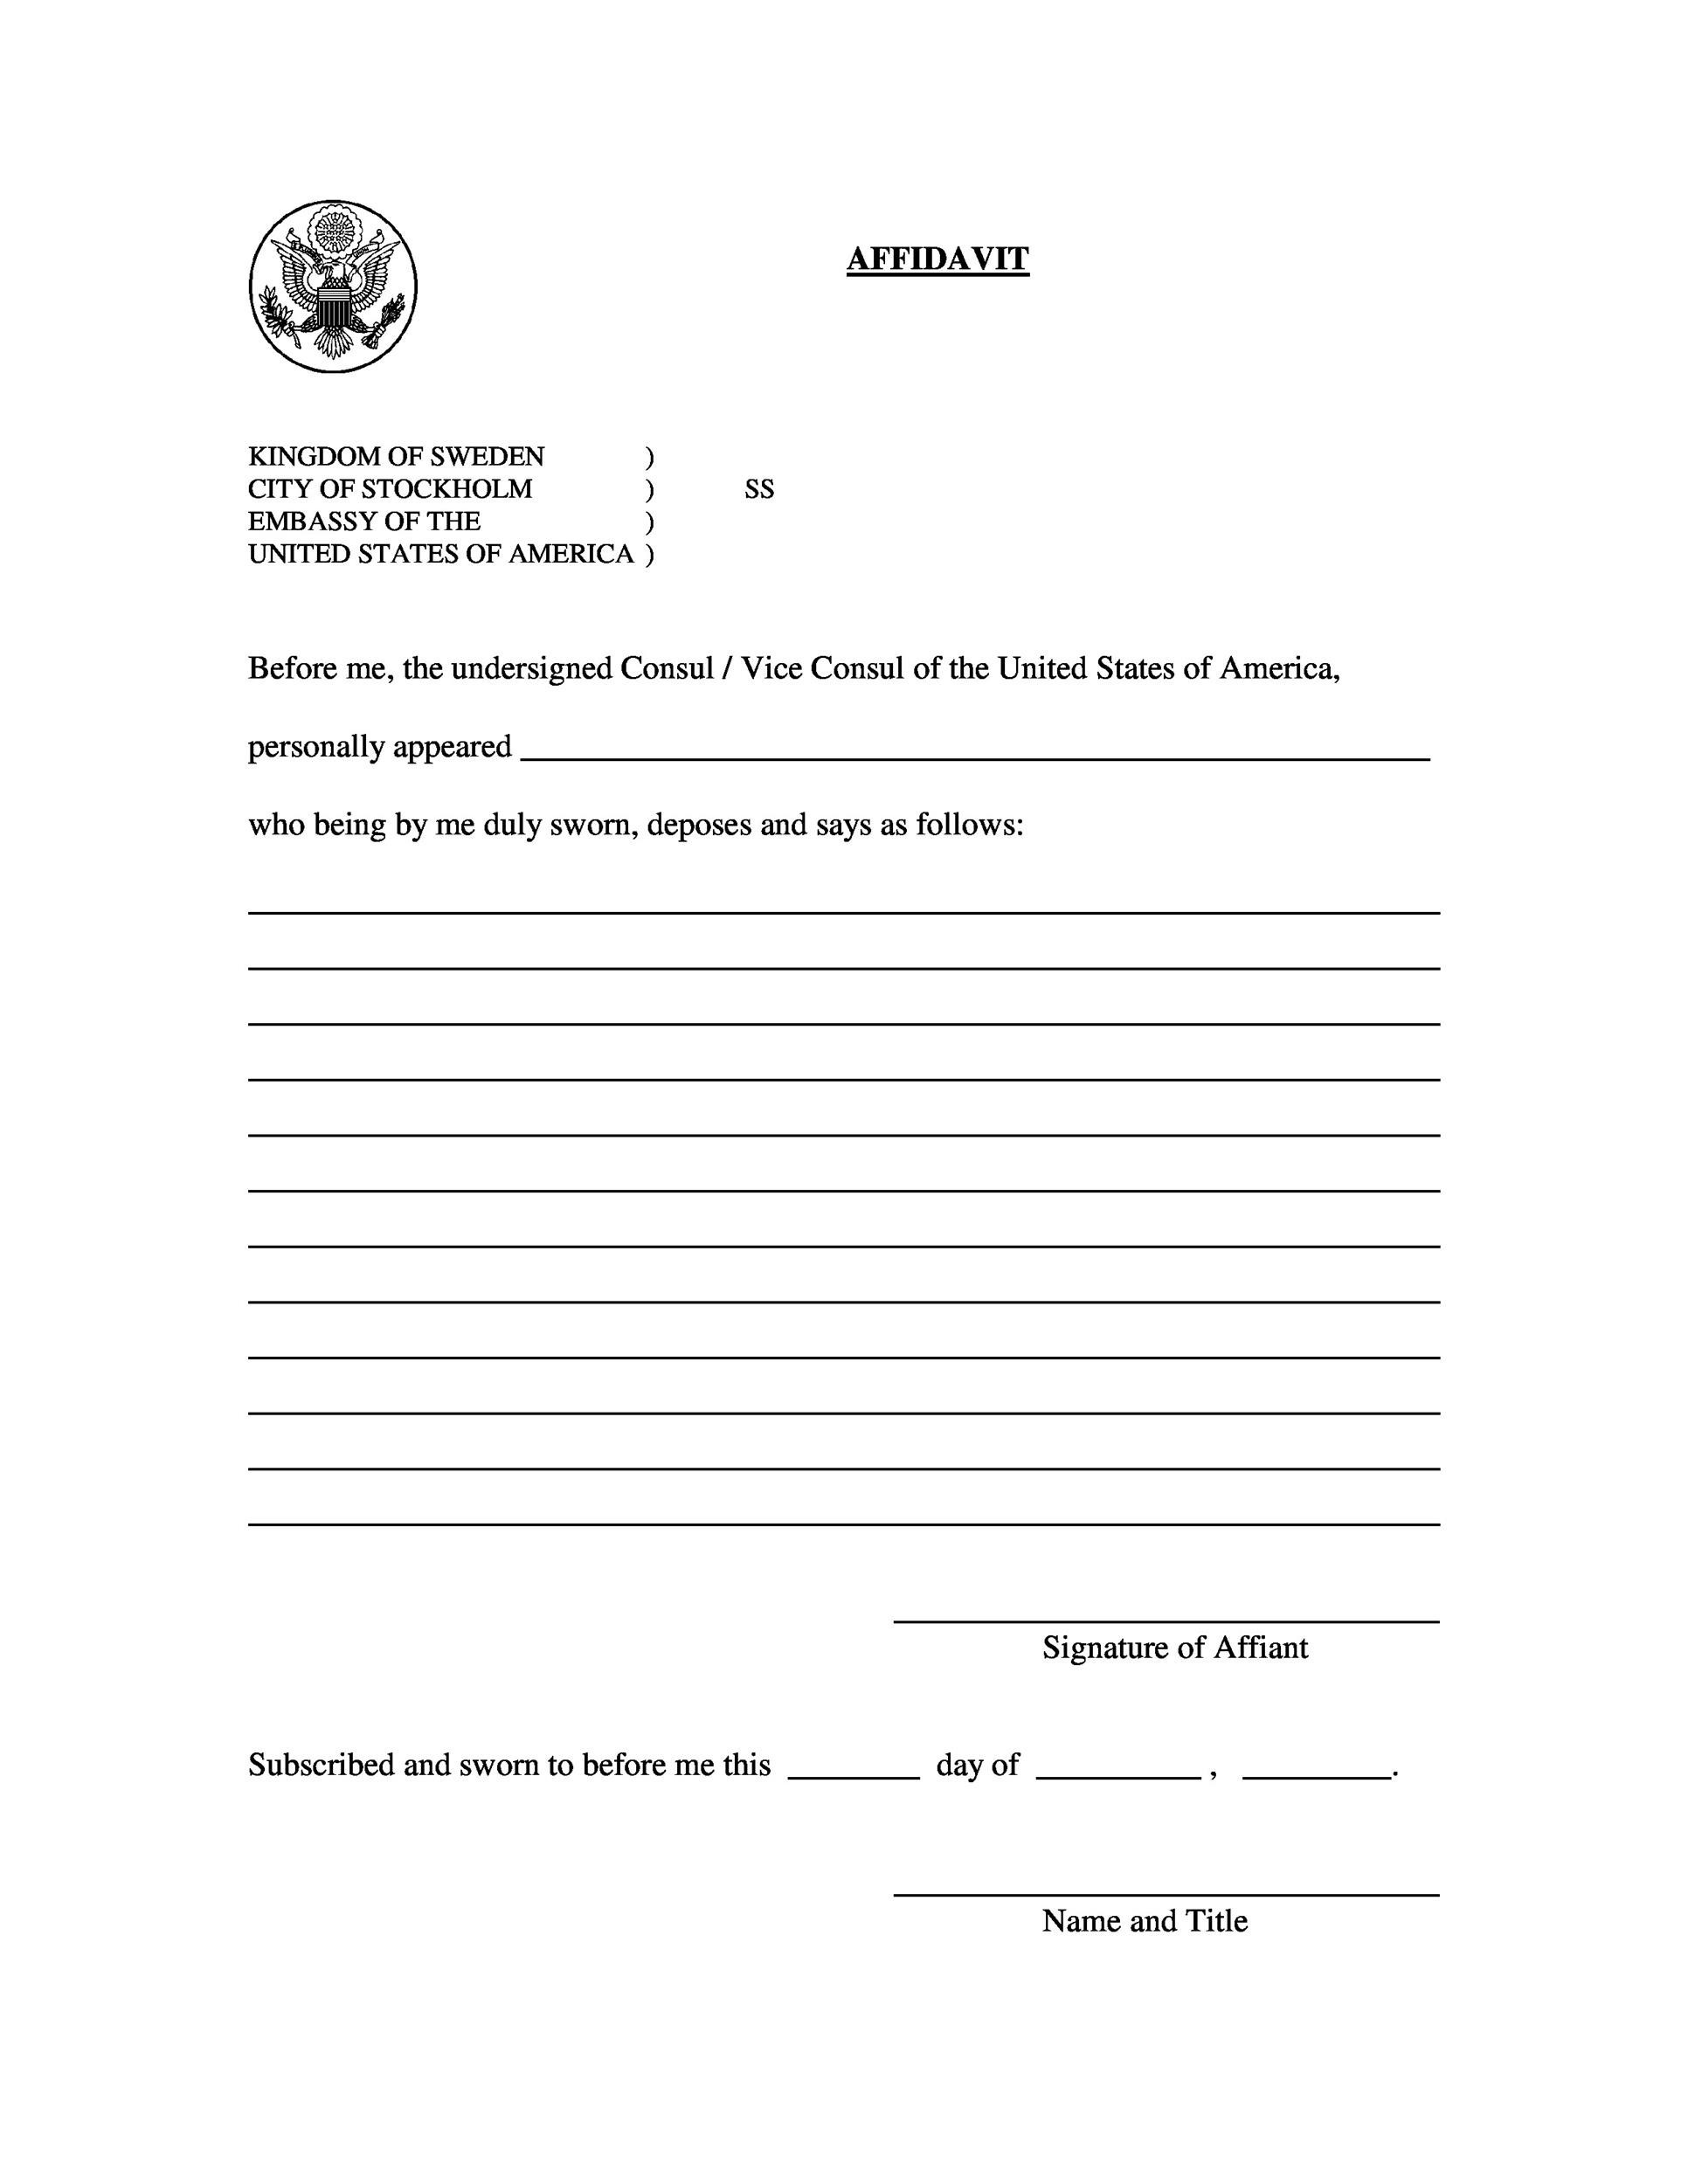 blank affidavit form zimbabwe pdf